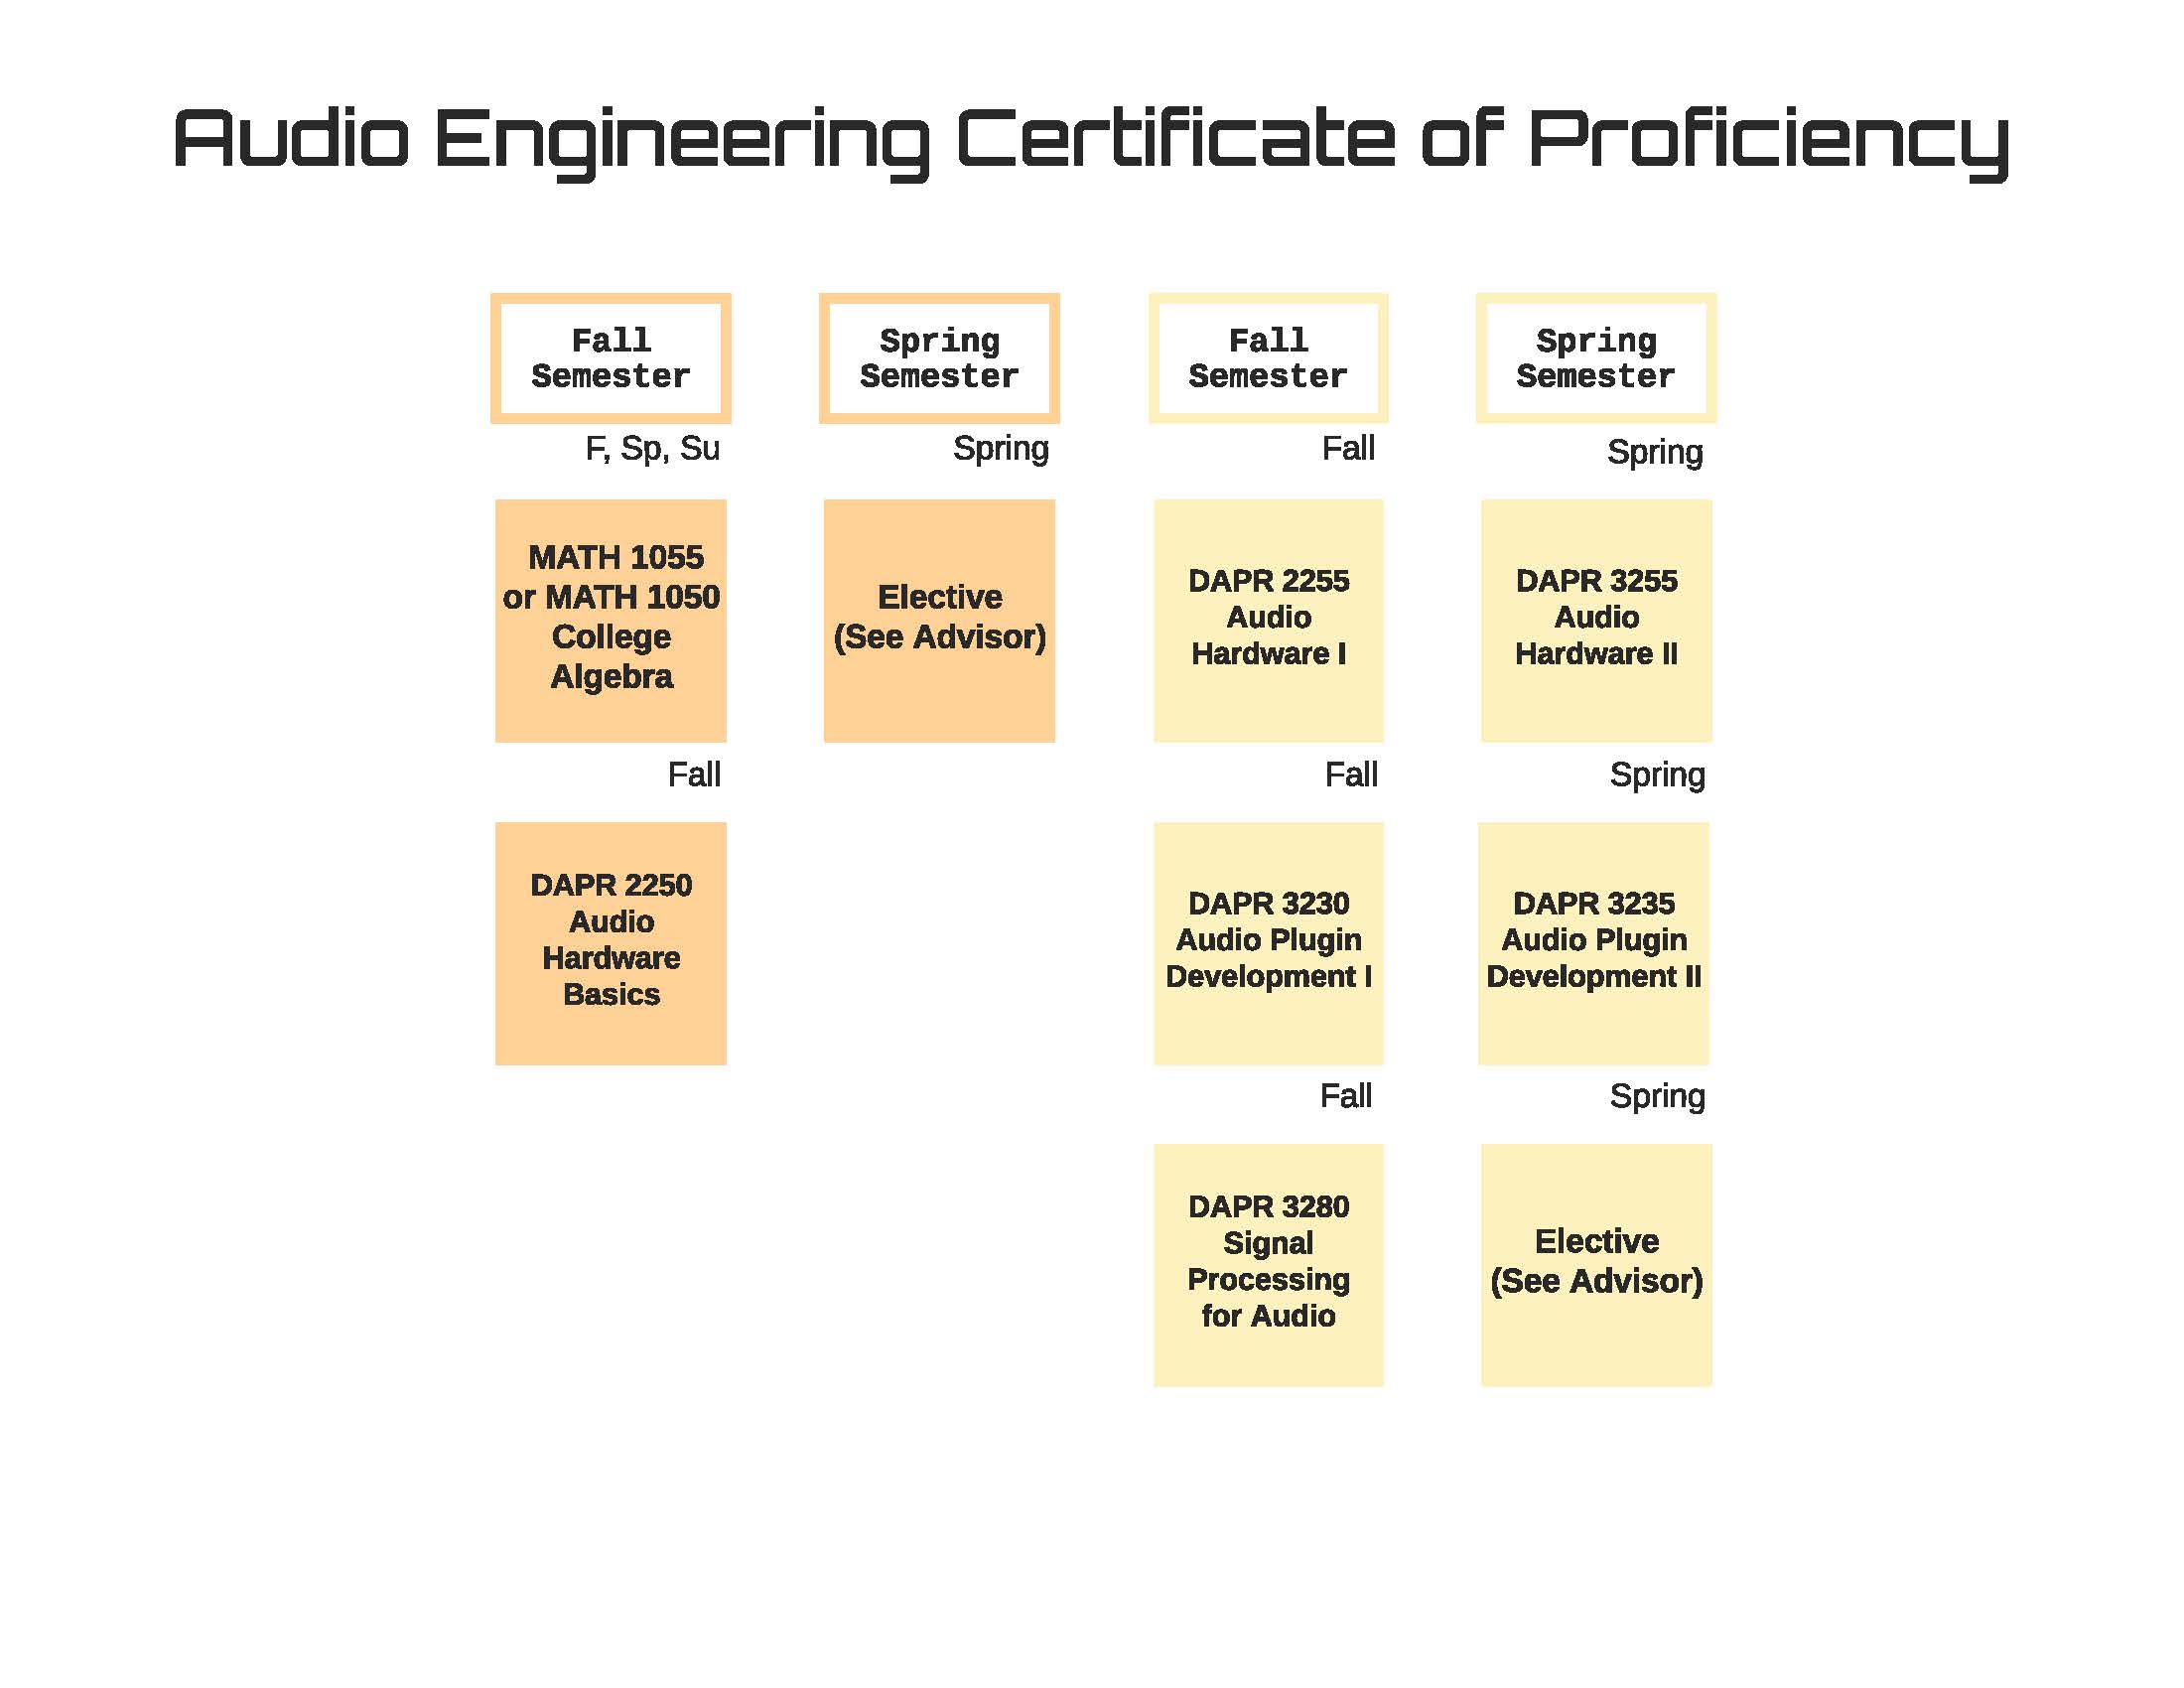 Audio Engineering Certificate Flow Chart